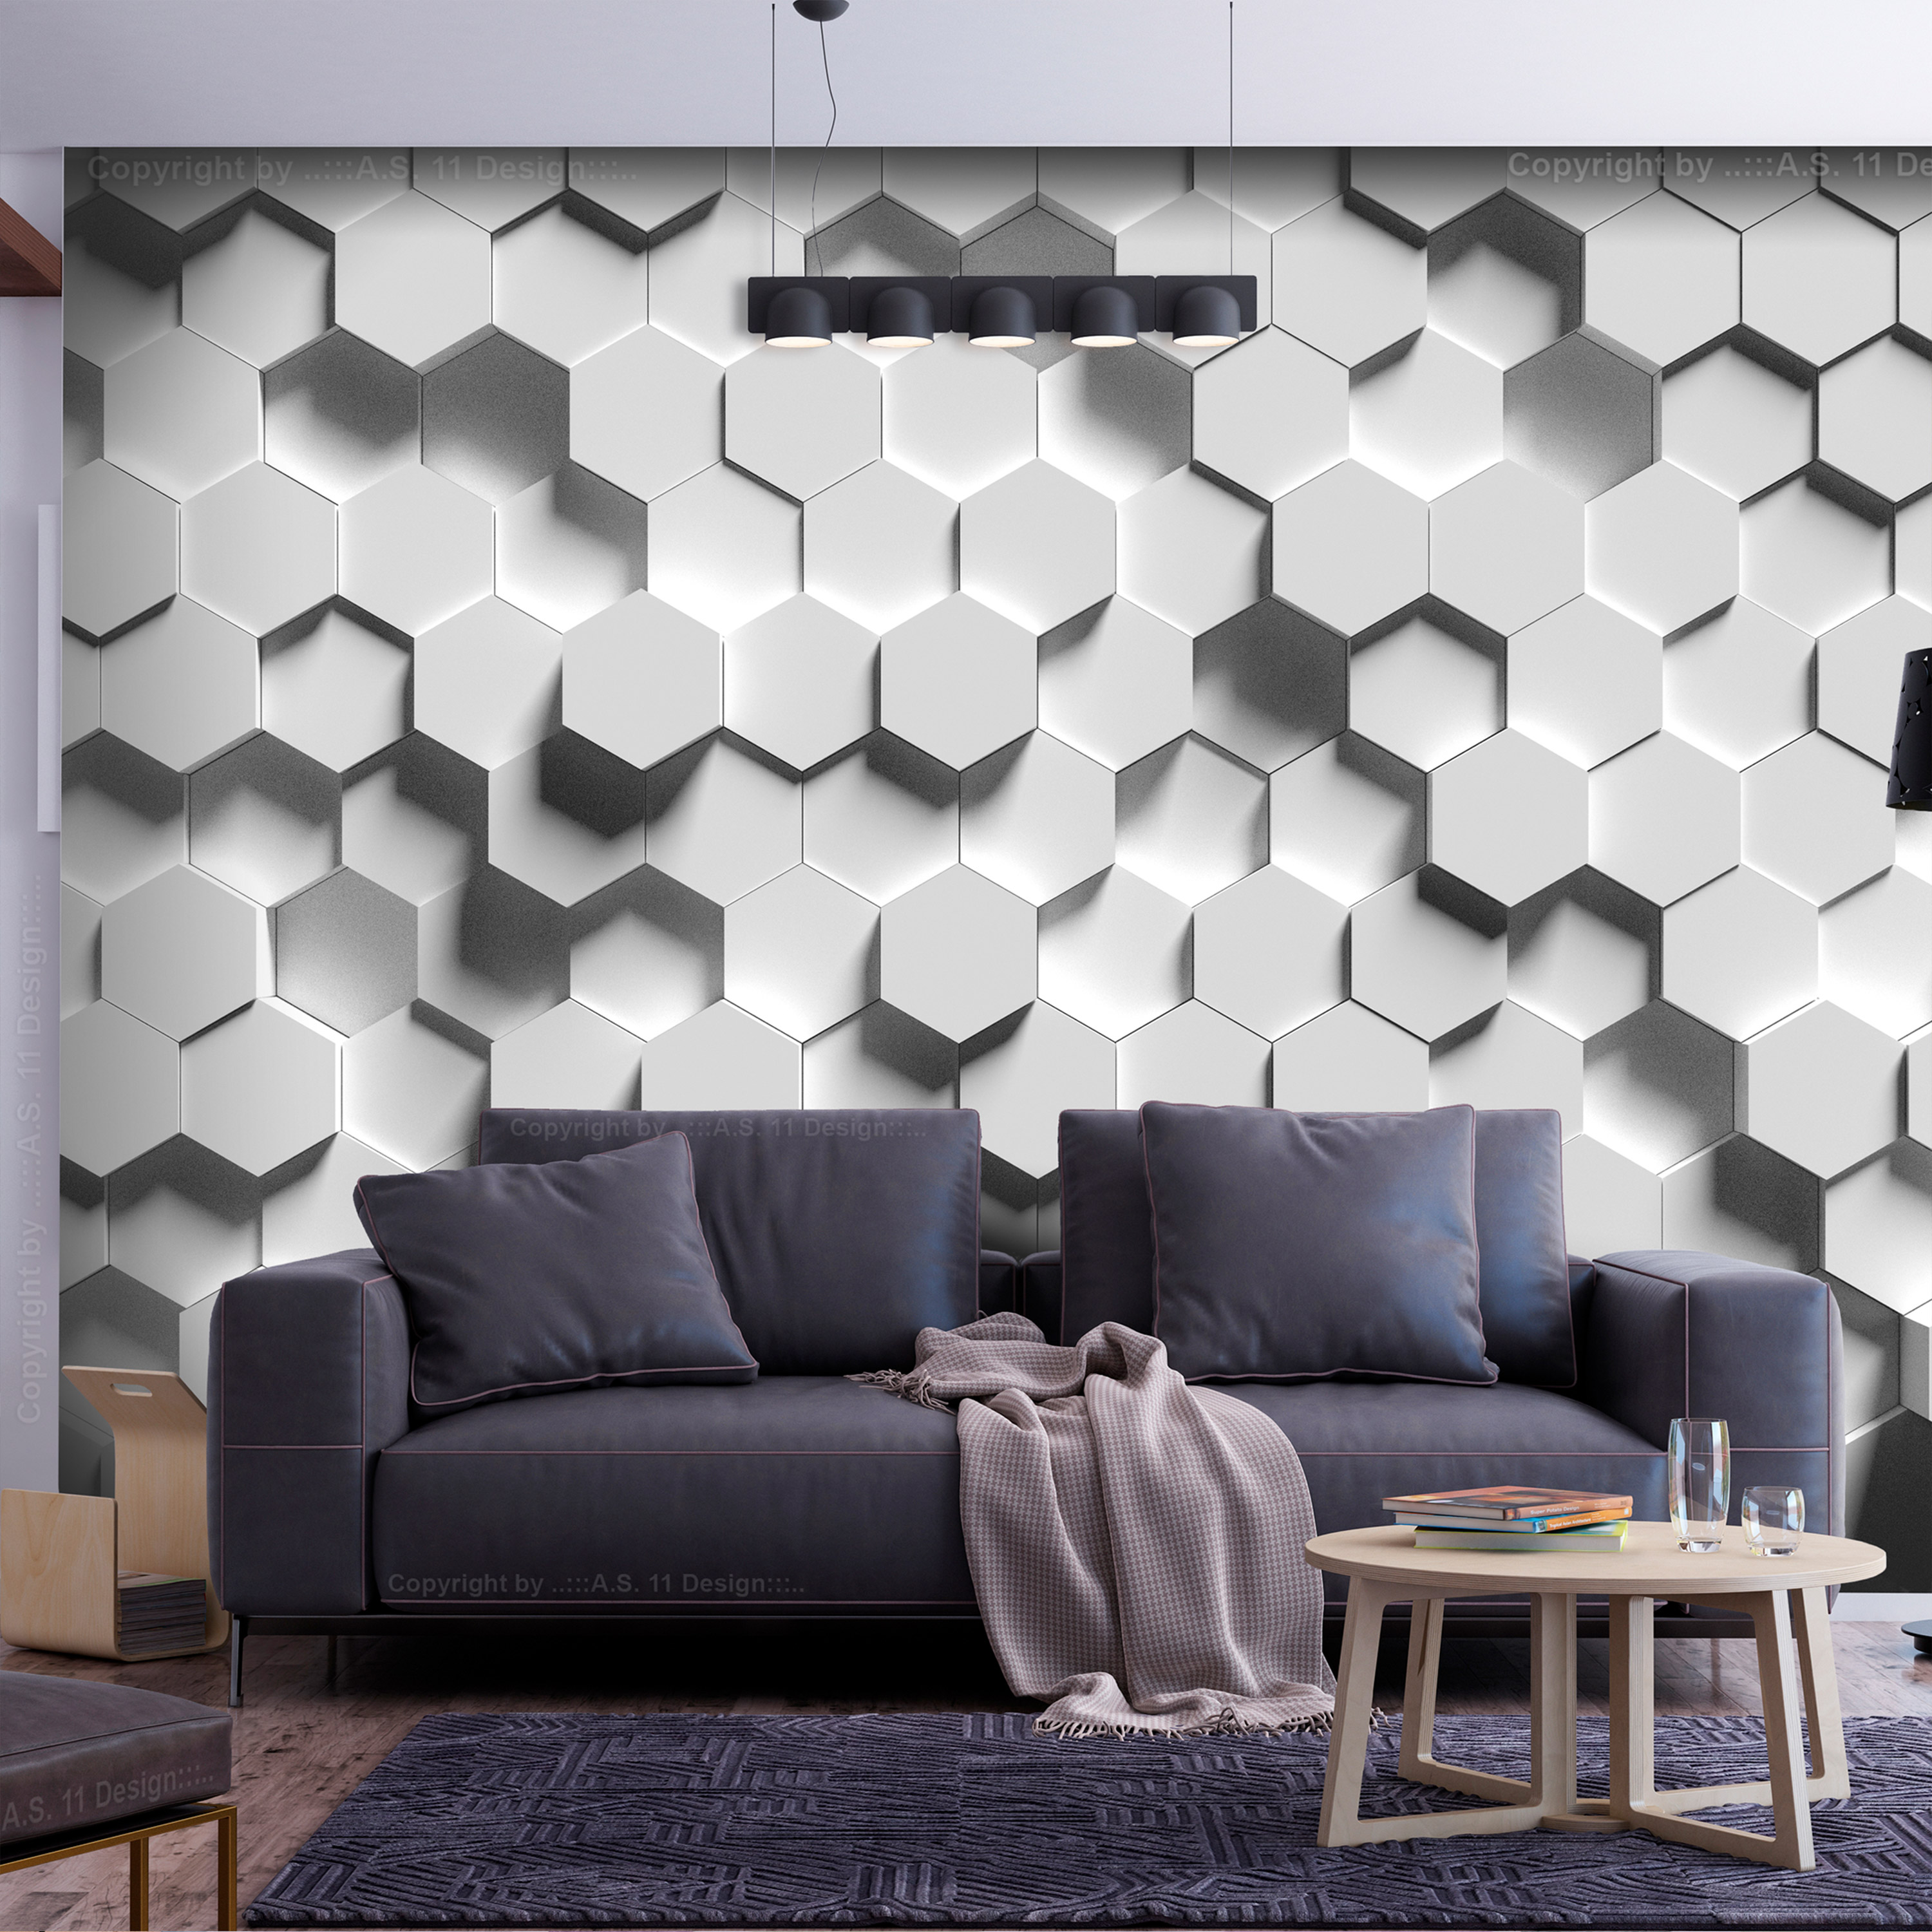 Self-adhesive Wallpaper - Hexagonal Awareness - 196x140